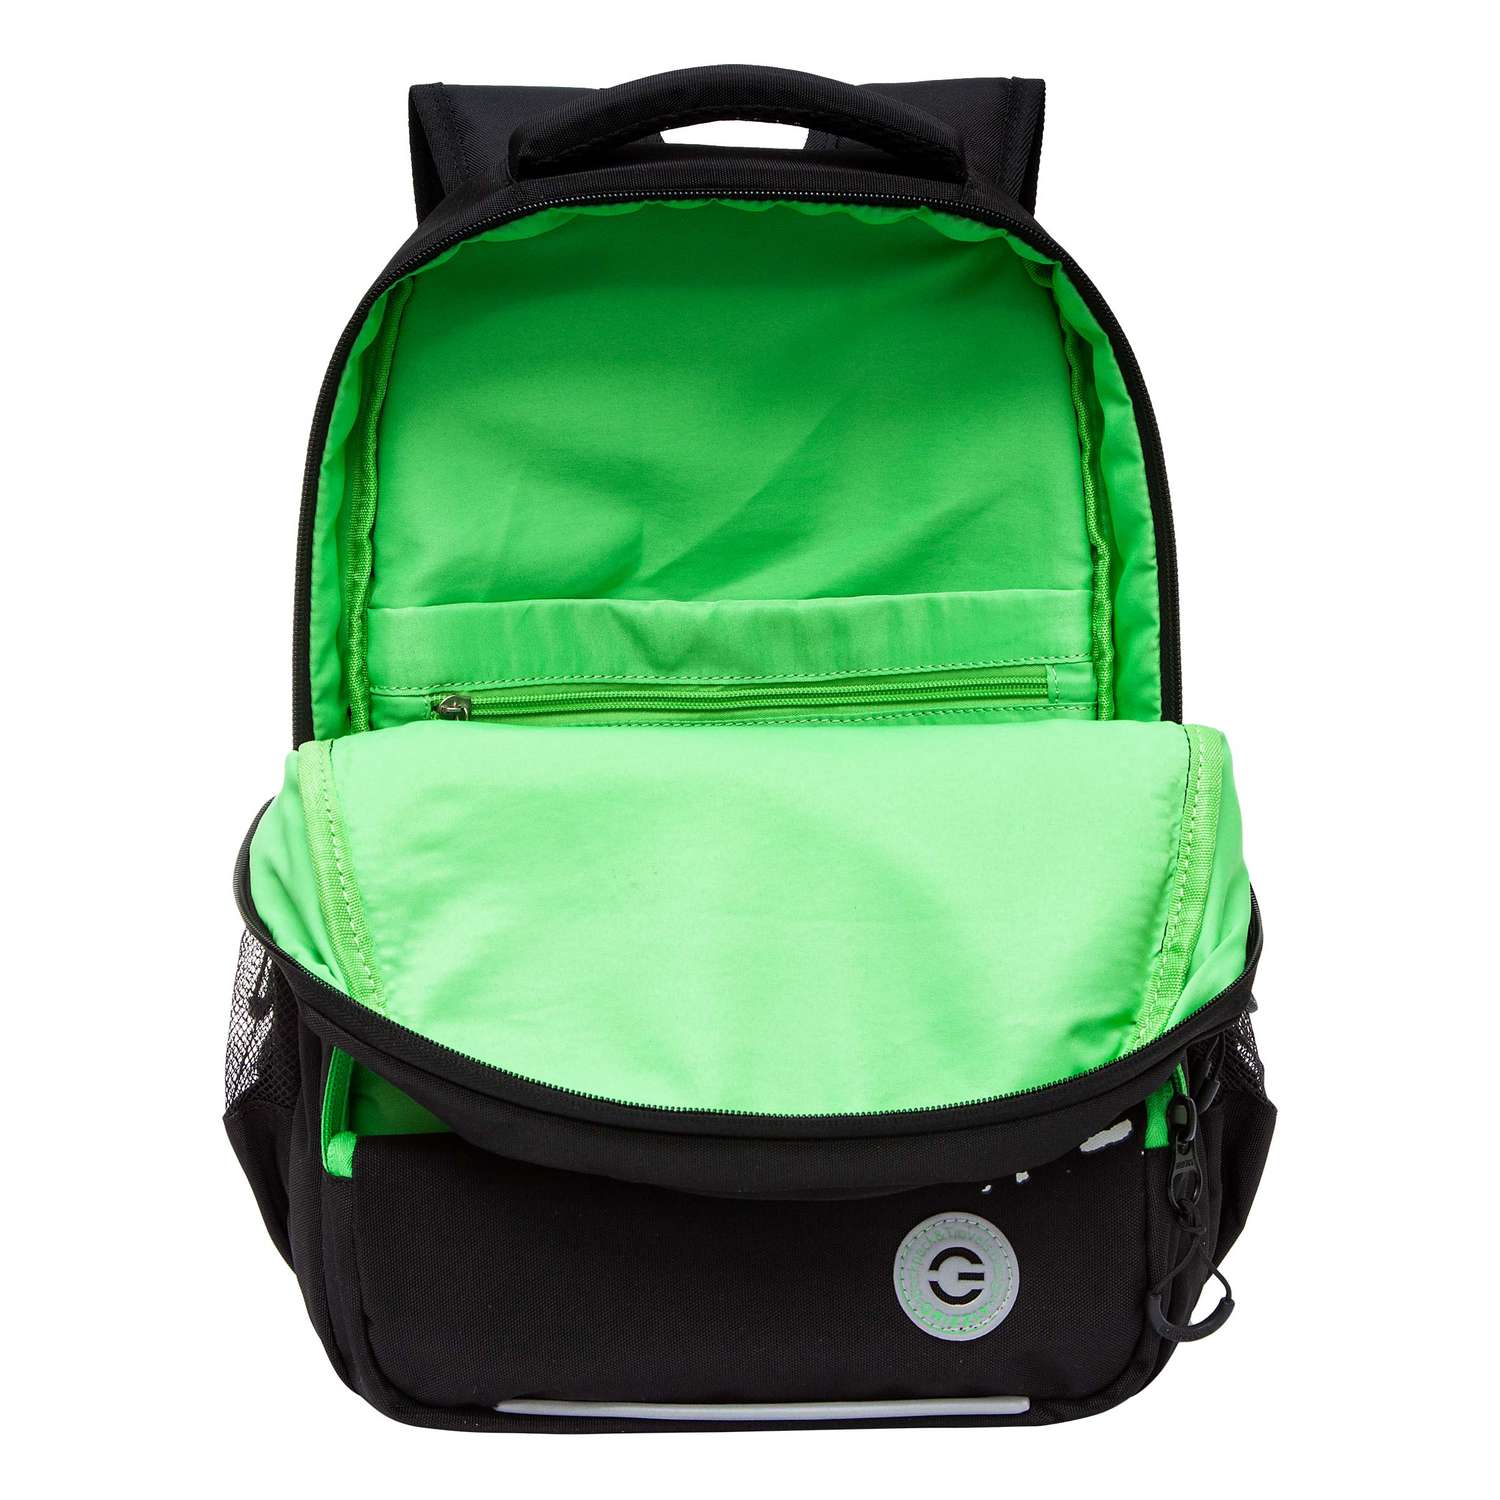 Рюкзак школьный Grizzly Черный-Зеленый RB-453-1/1 - фото 4